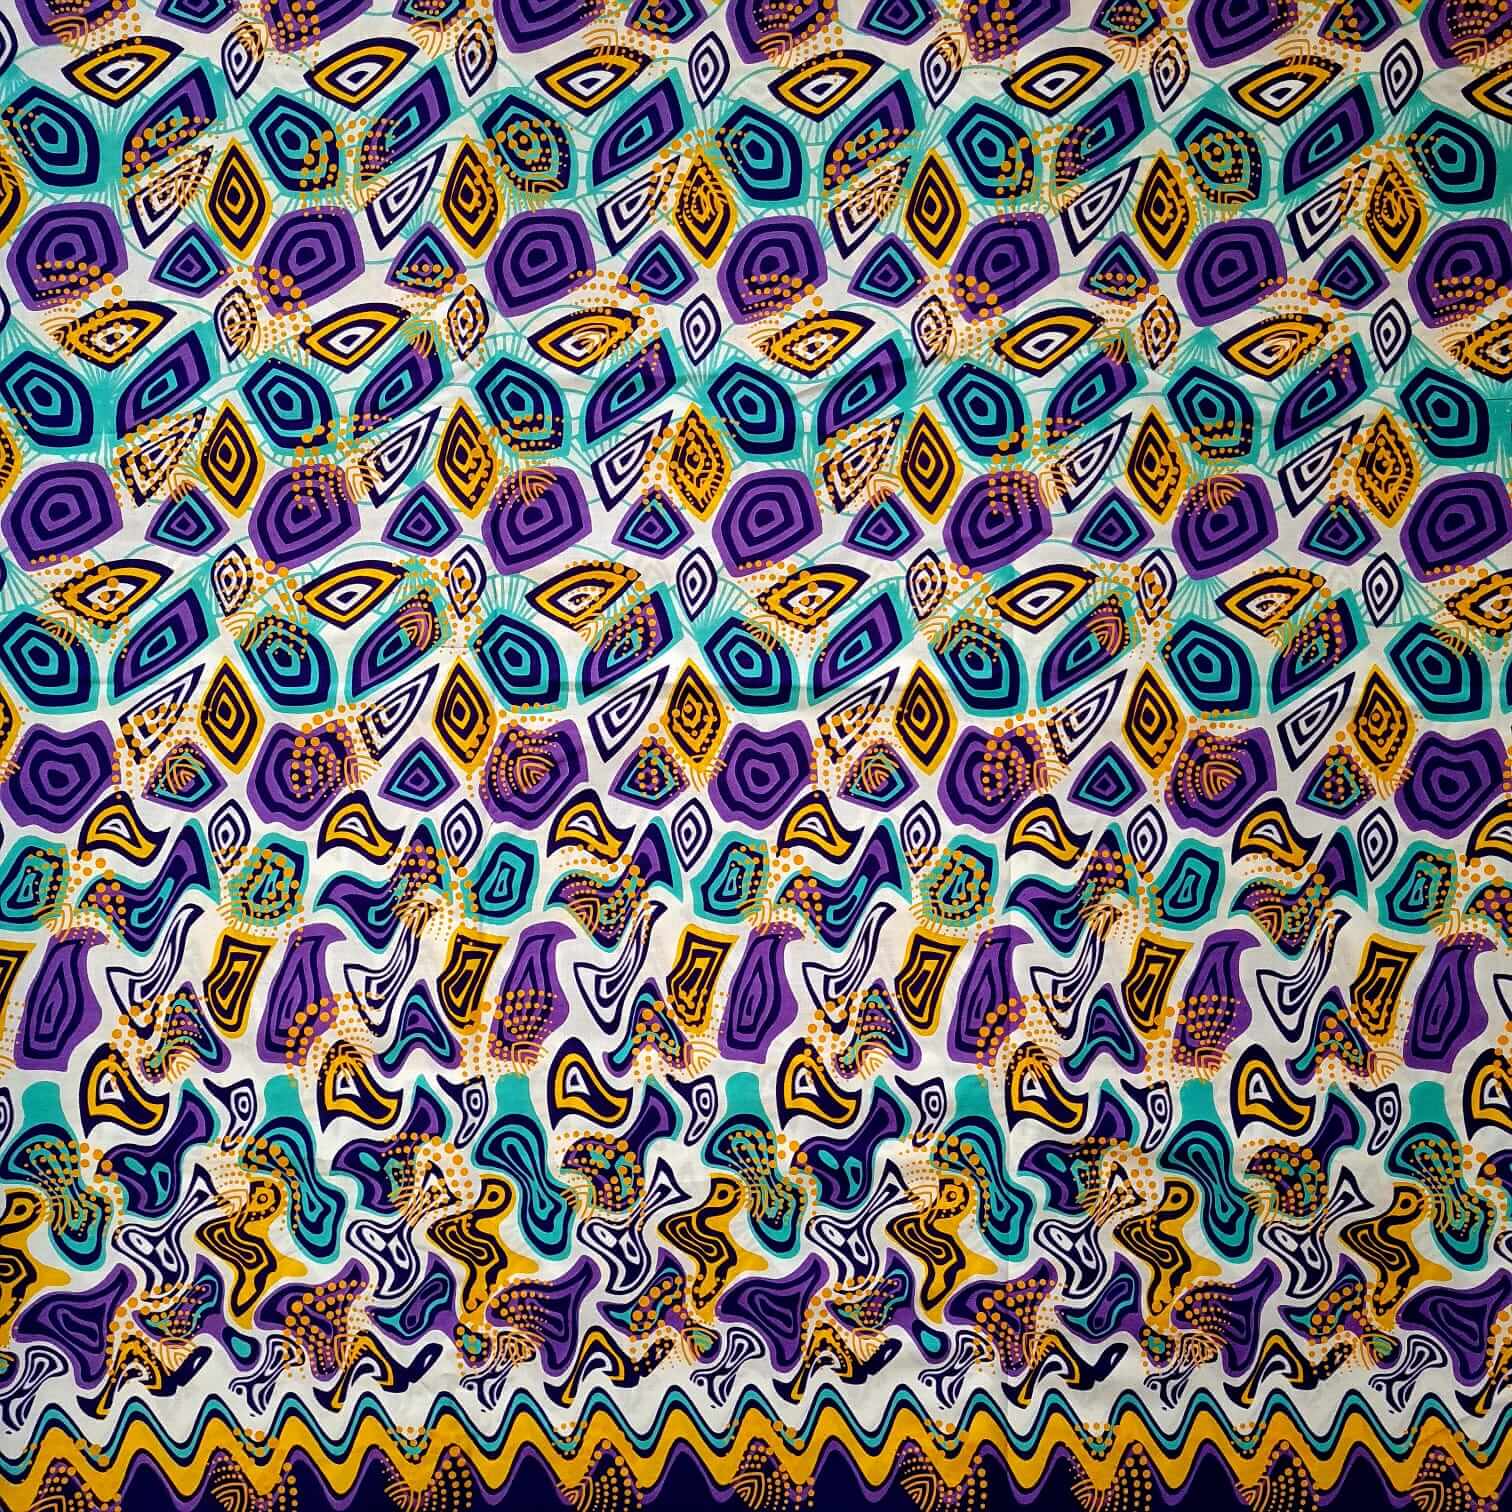 Tissu - Wax 100% coton - Graphiques - Violet / Turquoise / Jaune